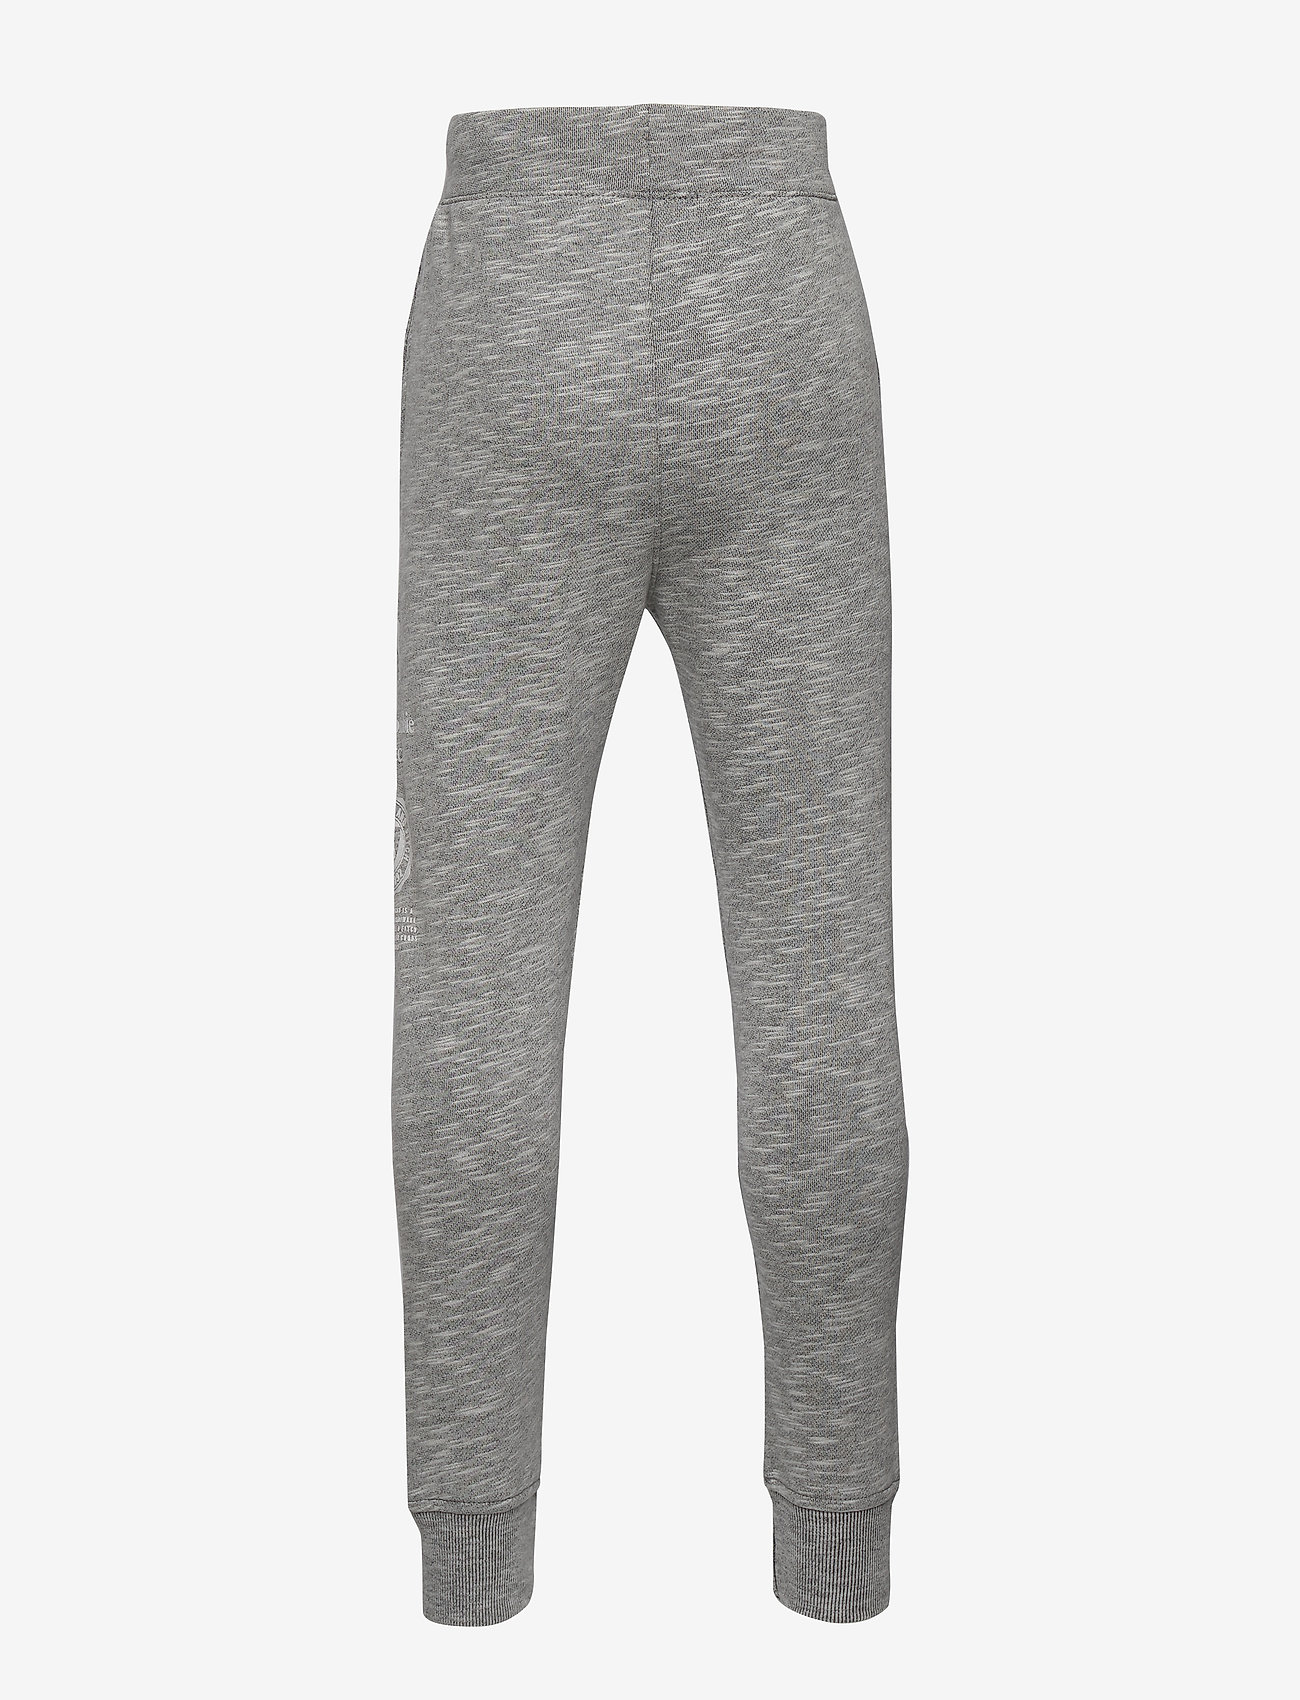 abercrombie grey sweatpants